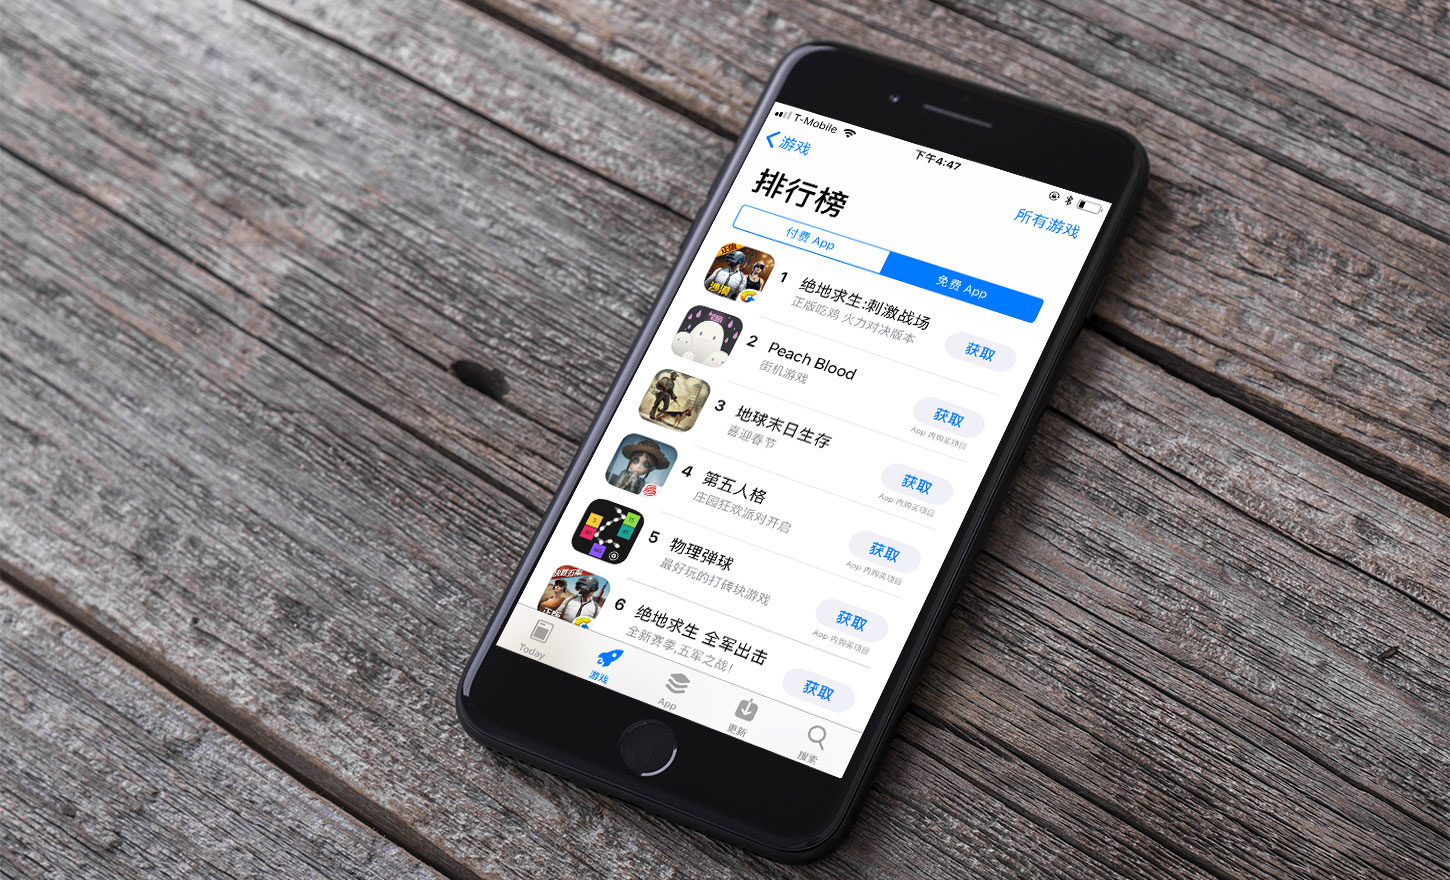 过去一年内，腾讯旗下App霸占中国App Store免费榜首共197天，同比增长105%